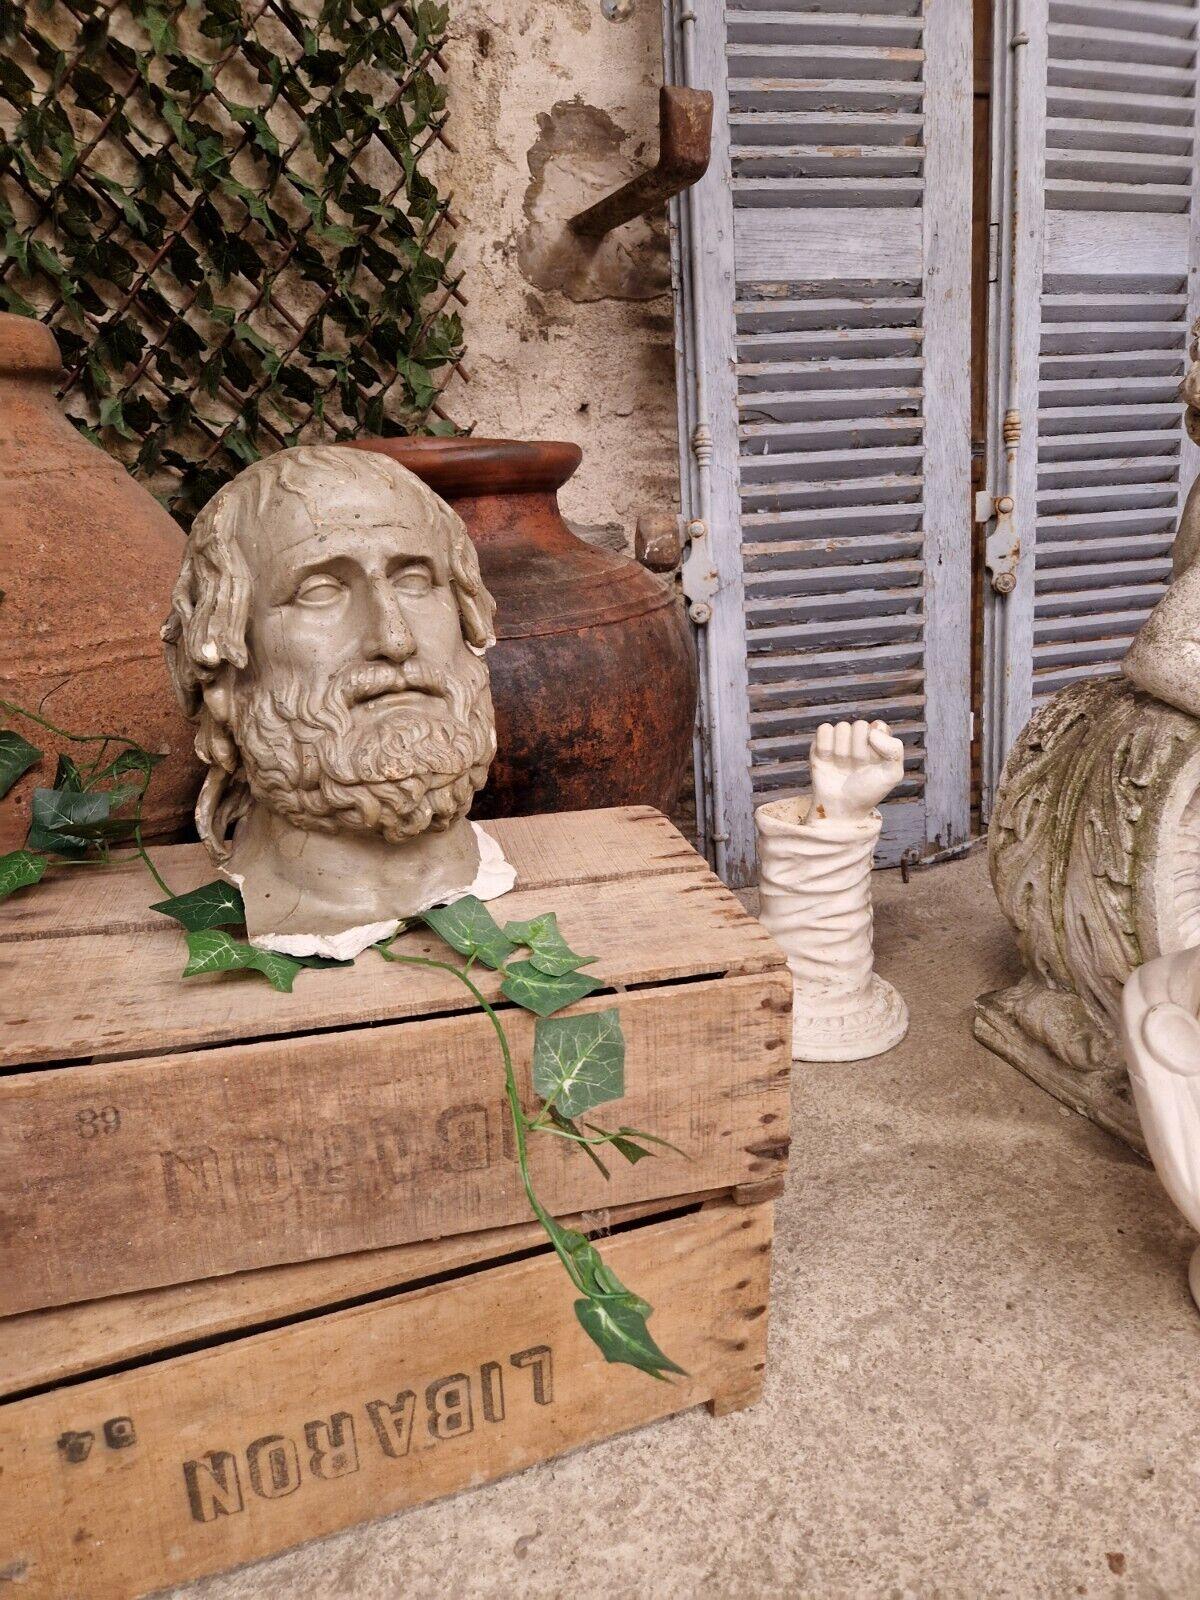 Nous avons le plaisir de proposer à la vente cette Tête sculptée du Tragédien d'Euripide

Le buste est en plâtre avec une laque grise.
Couleur grise 
Circa 1950
Sculpté à la main

Origine française

Cou brisé/ retiré de la statue